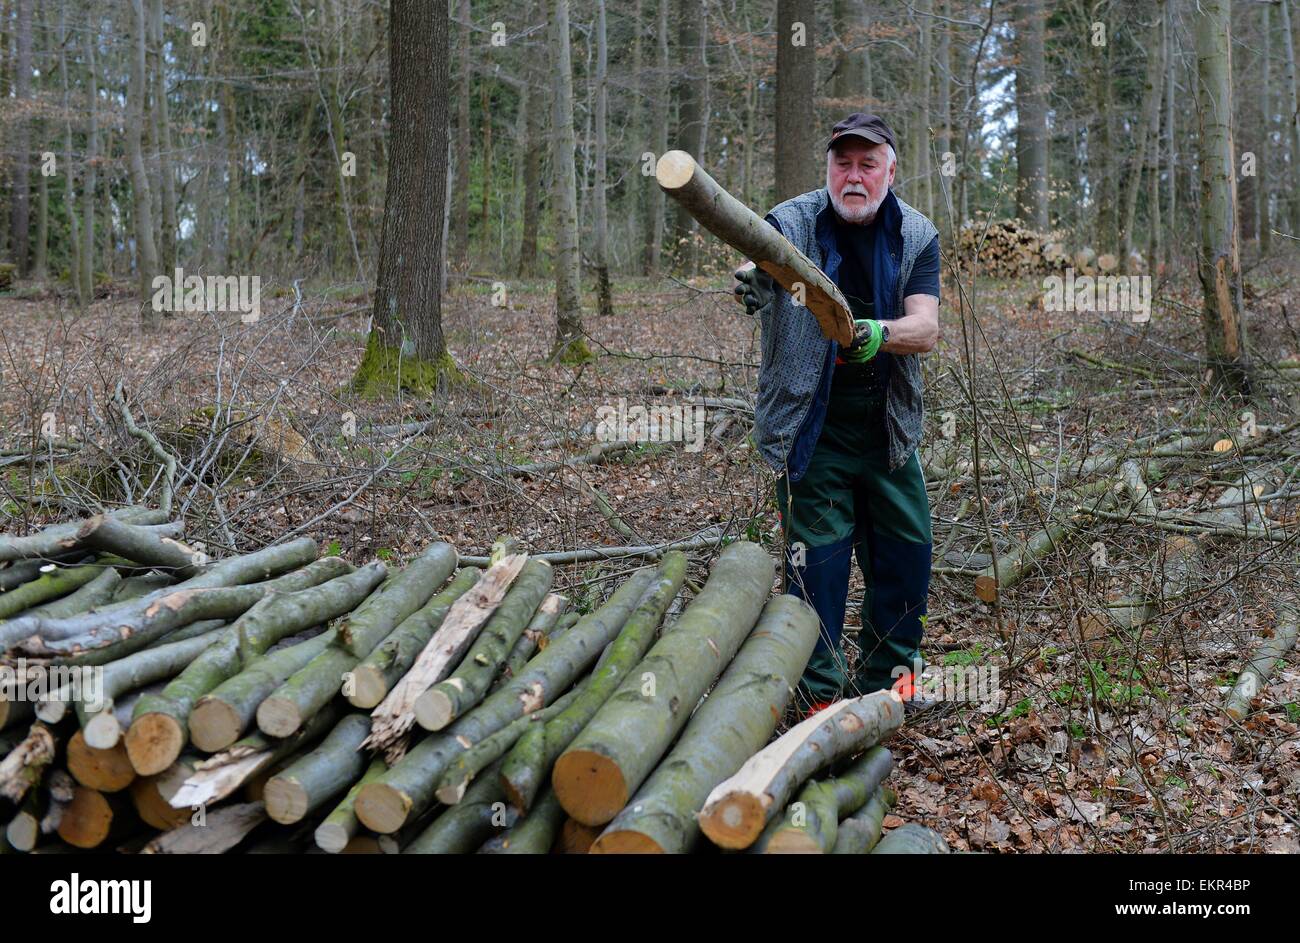 Macchinoso nella foresta, Germania, vicino alla città di Pöhlde, 11. Aprile 2015. Foto: Frank Maggio/picture alliance Foto Stock